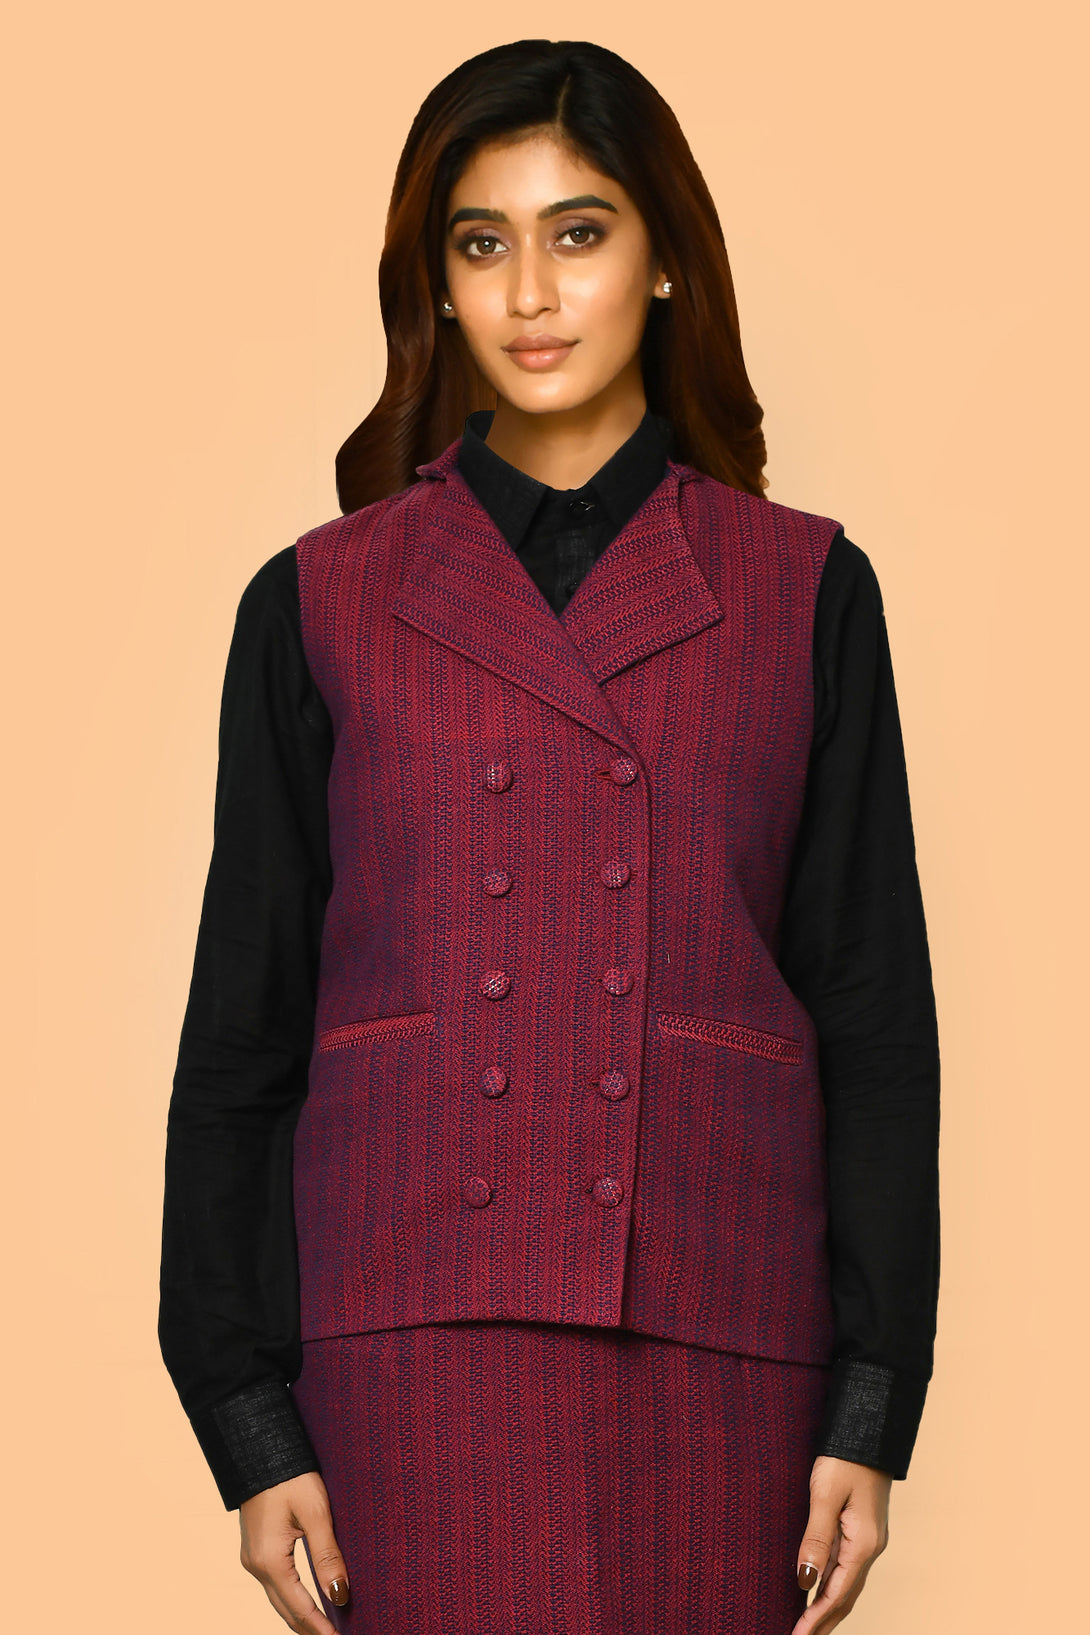 Shop latest handloom cotton office wear jacket for women